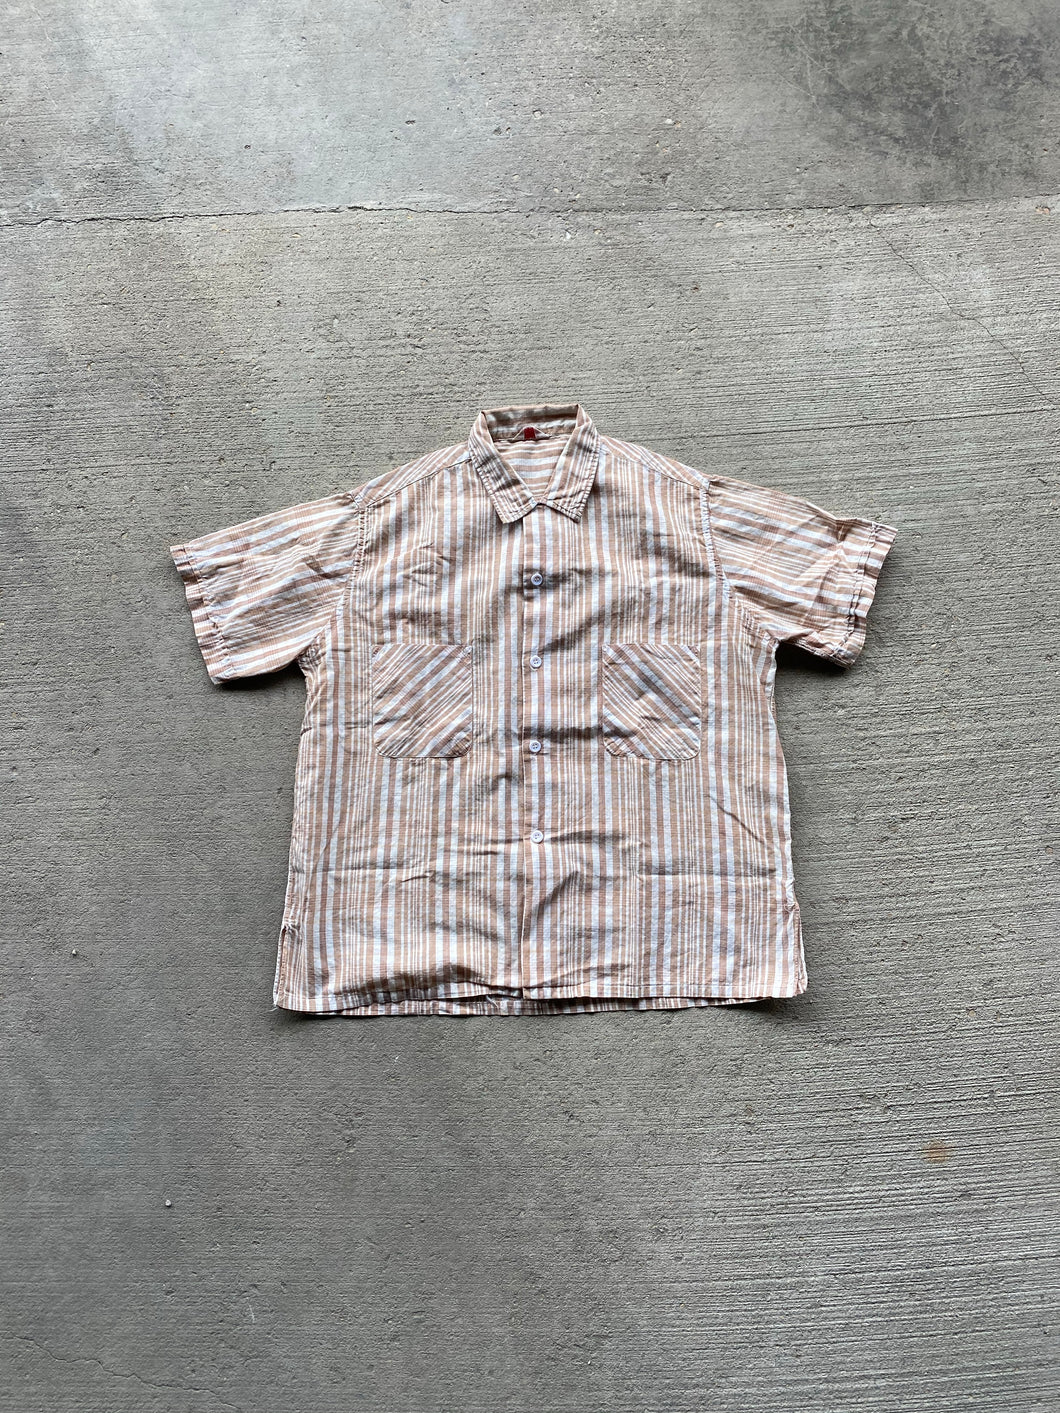 1940s vintage button up shirt (size M)